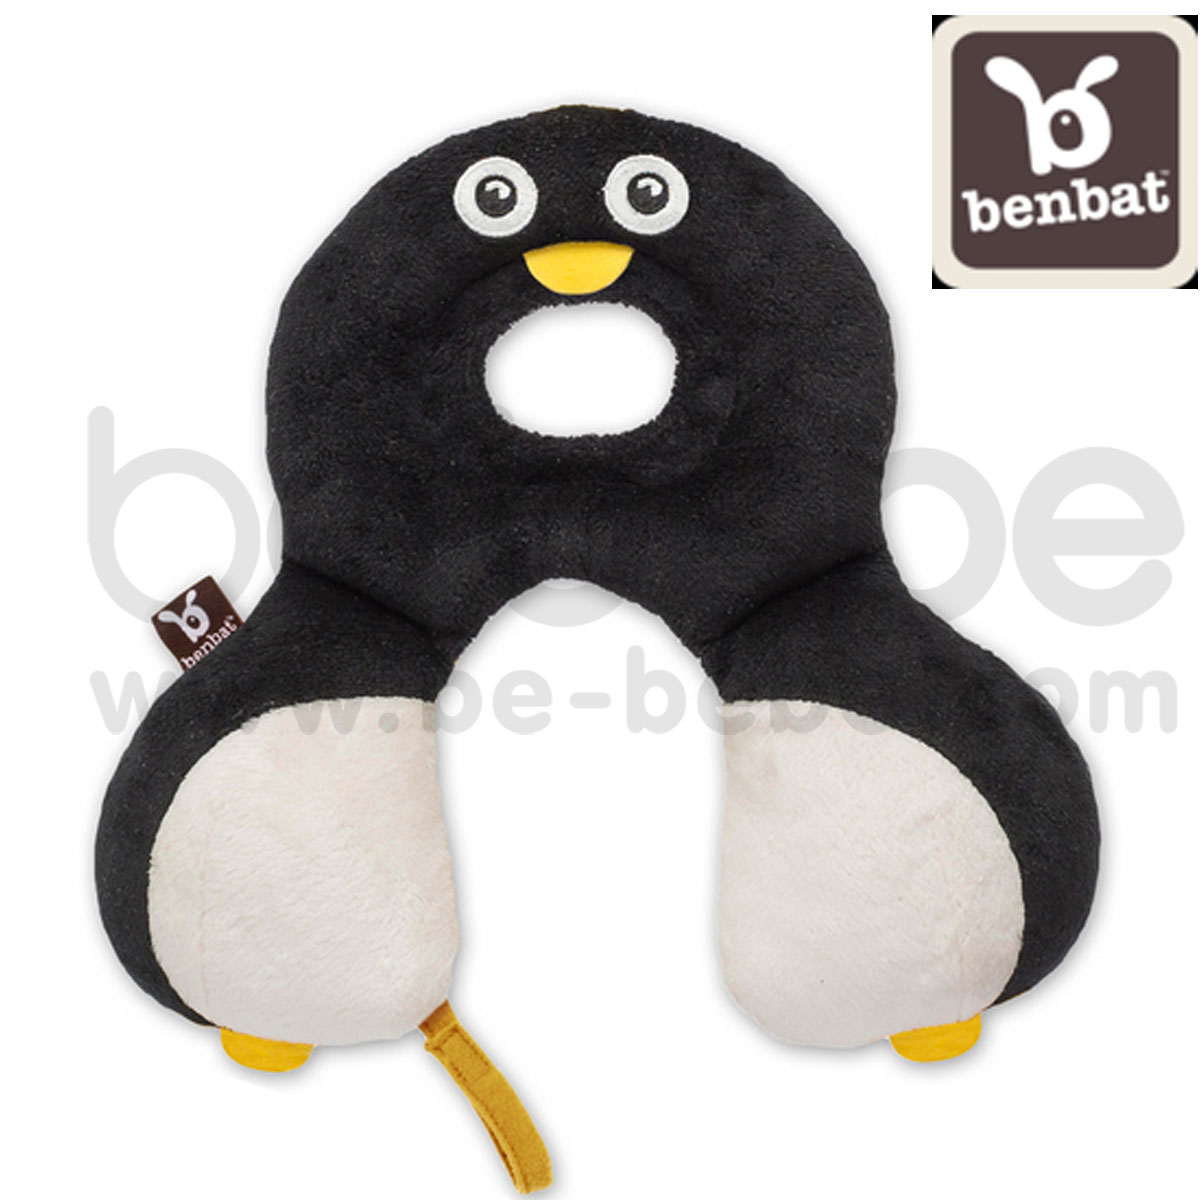 benbat : Head and Neck Support/Penguin (HR223)